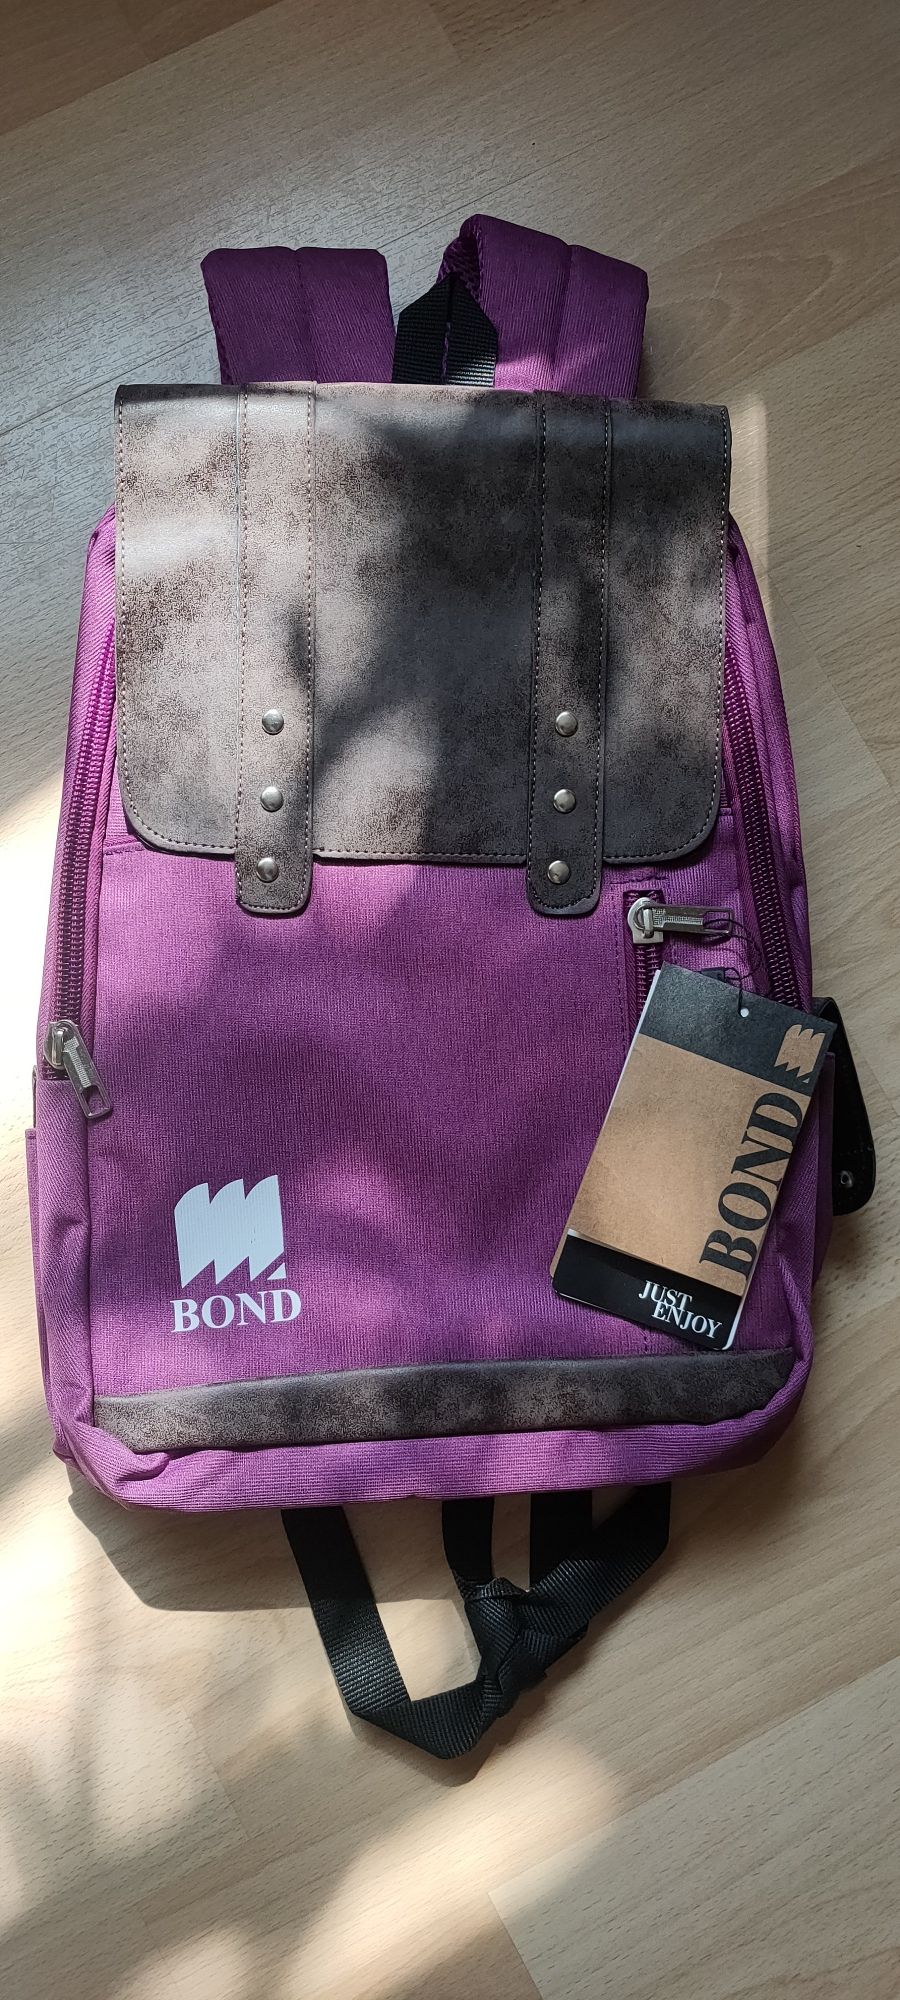 Оригинальные школьные рюкзак турецкого бренда "BOND"